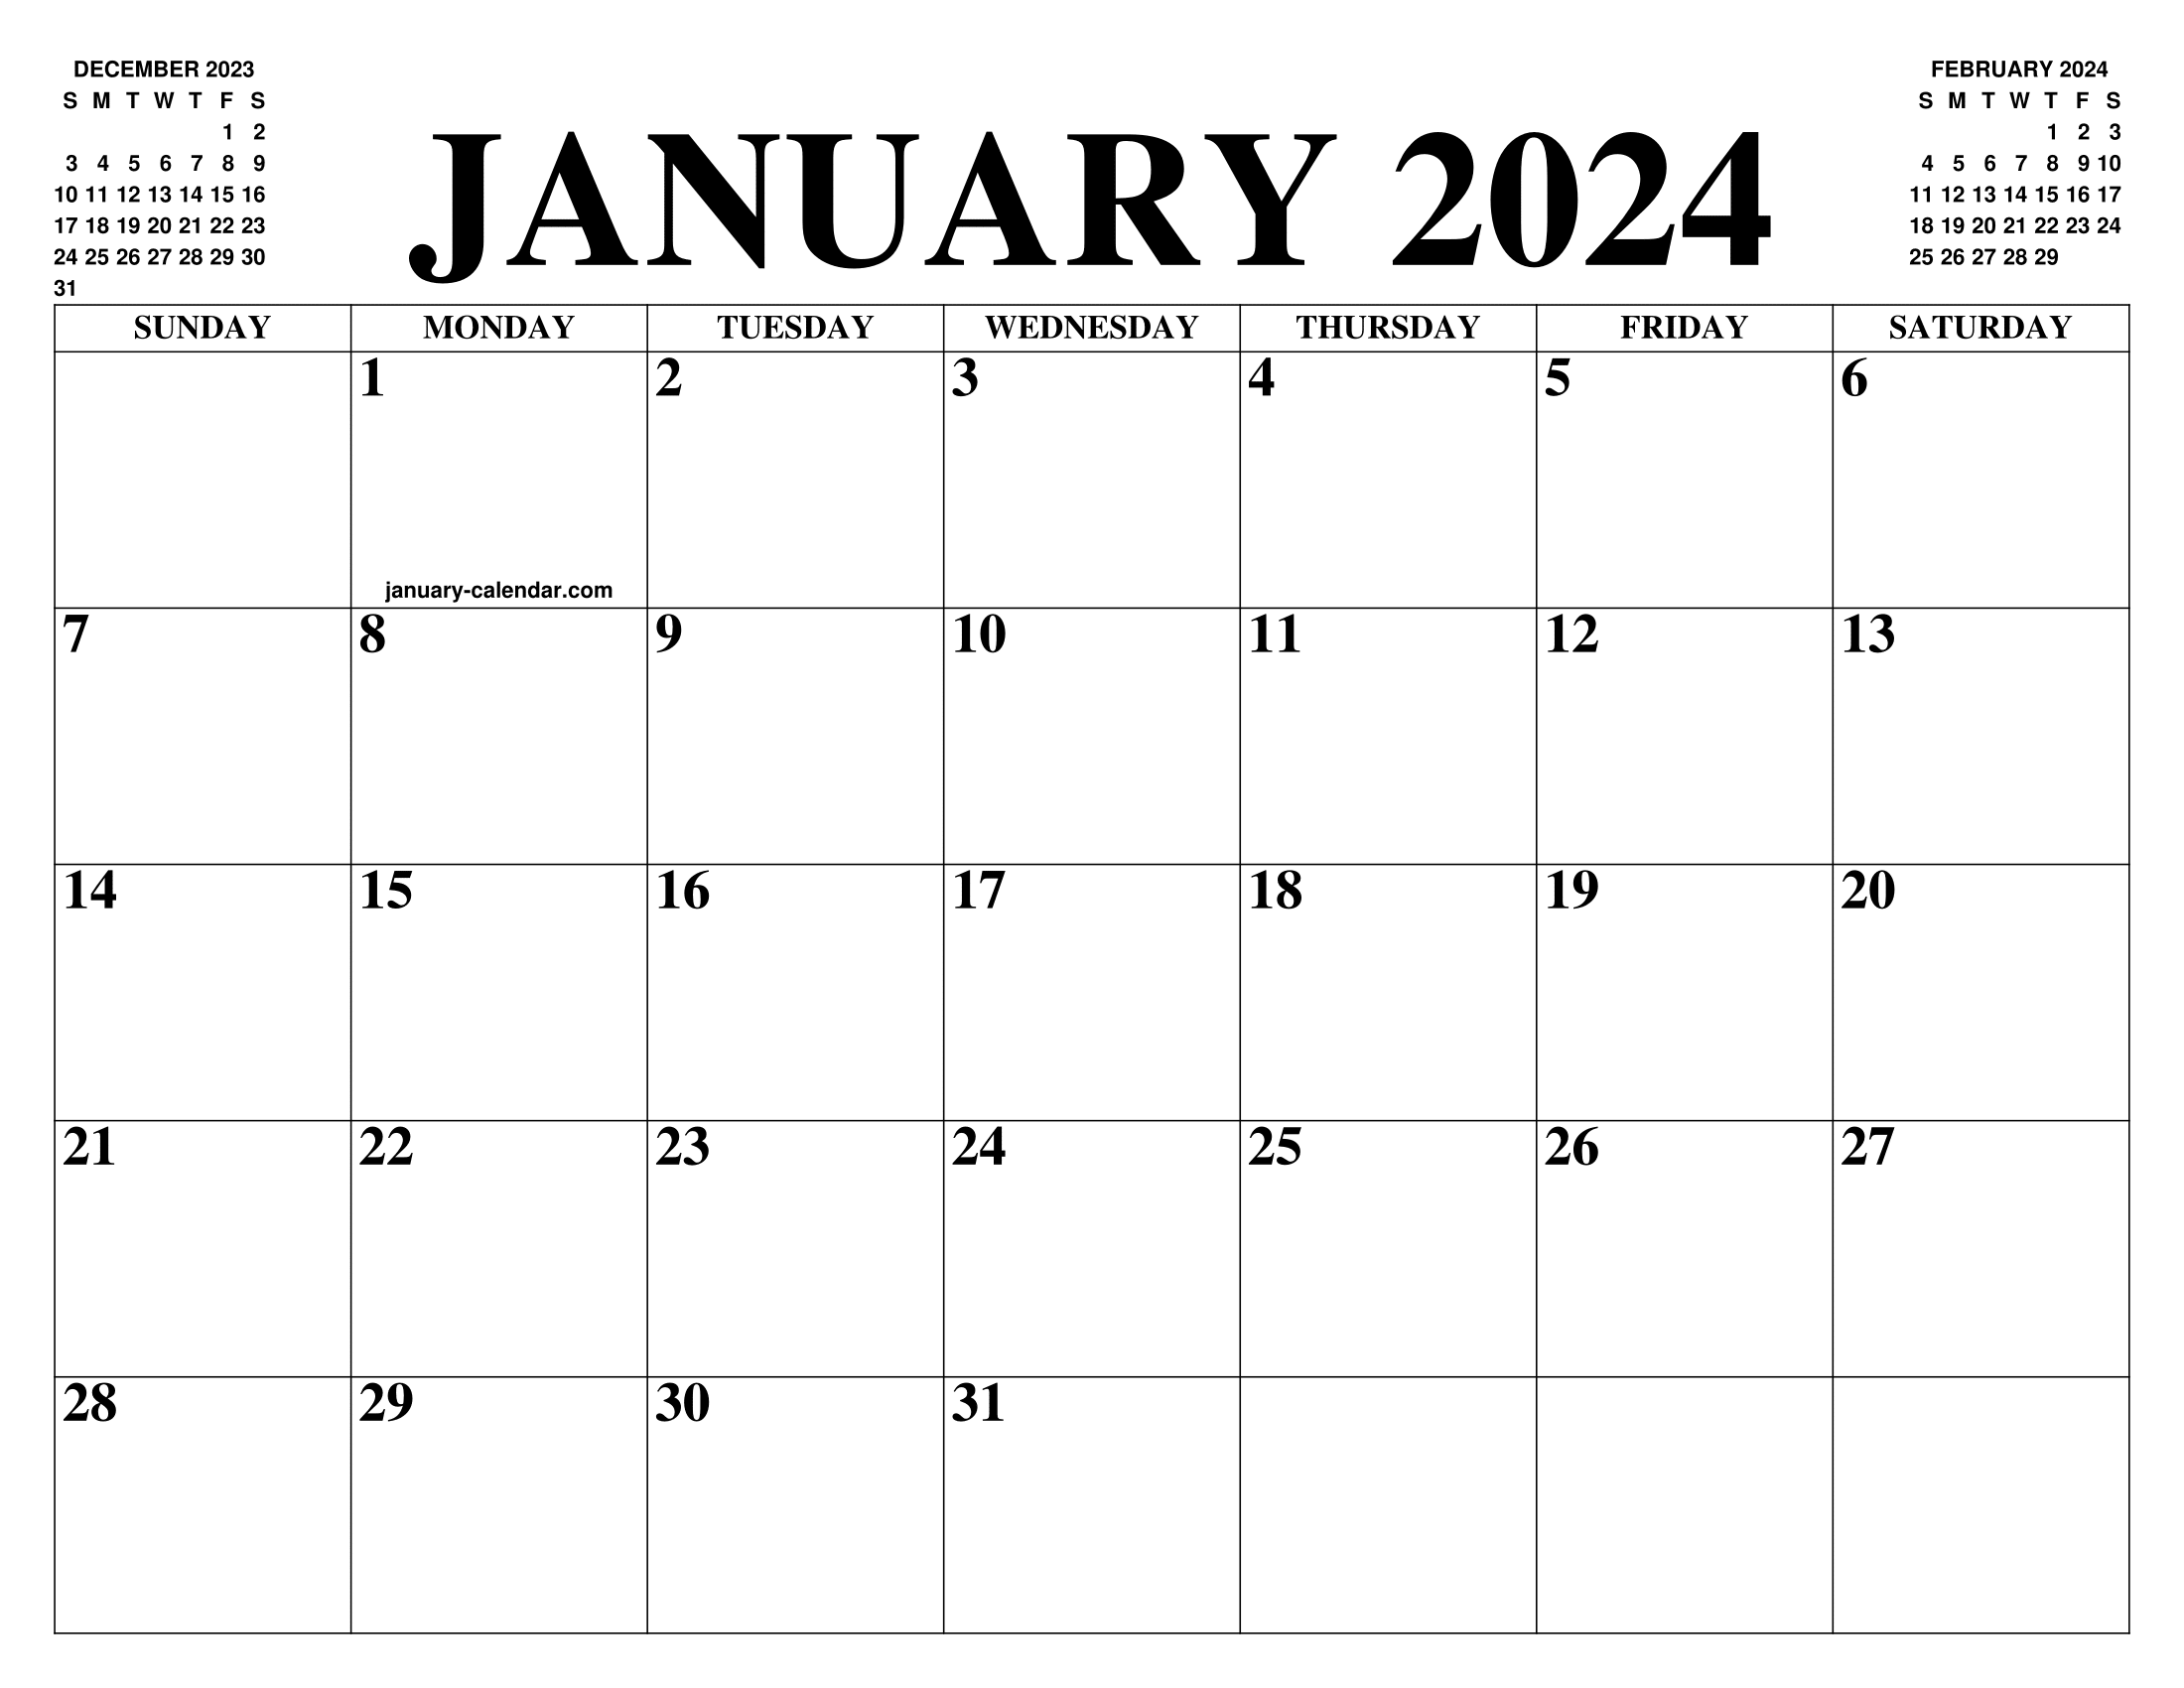 (c) January-calendar.com